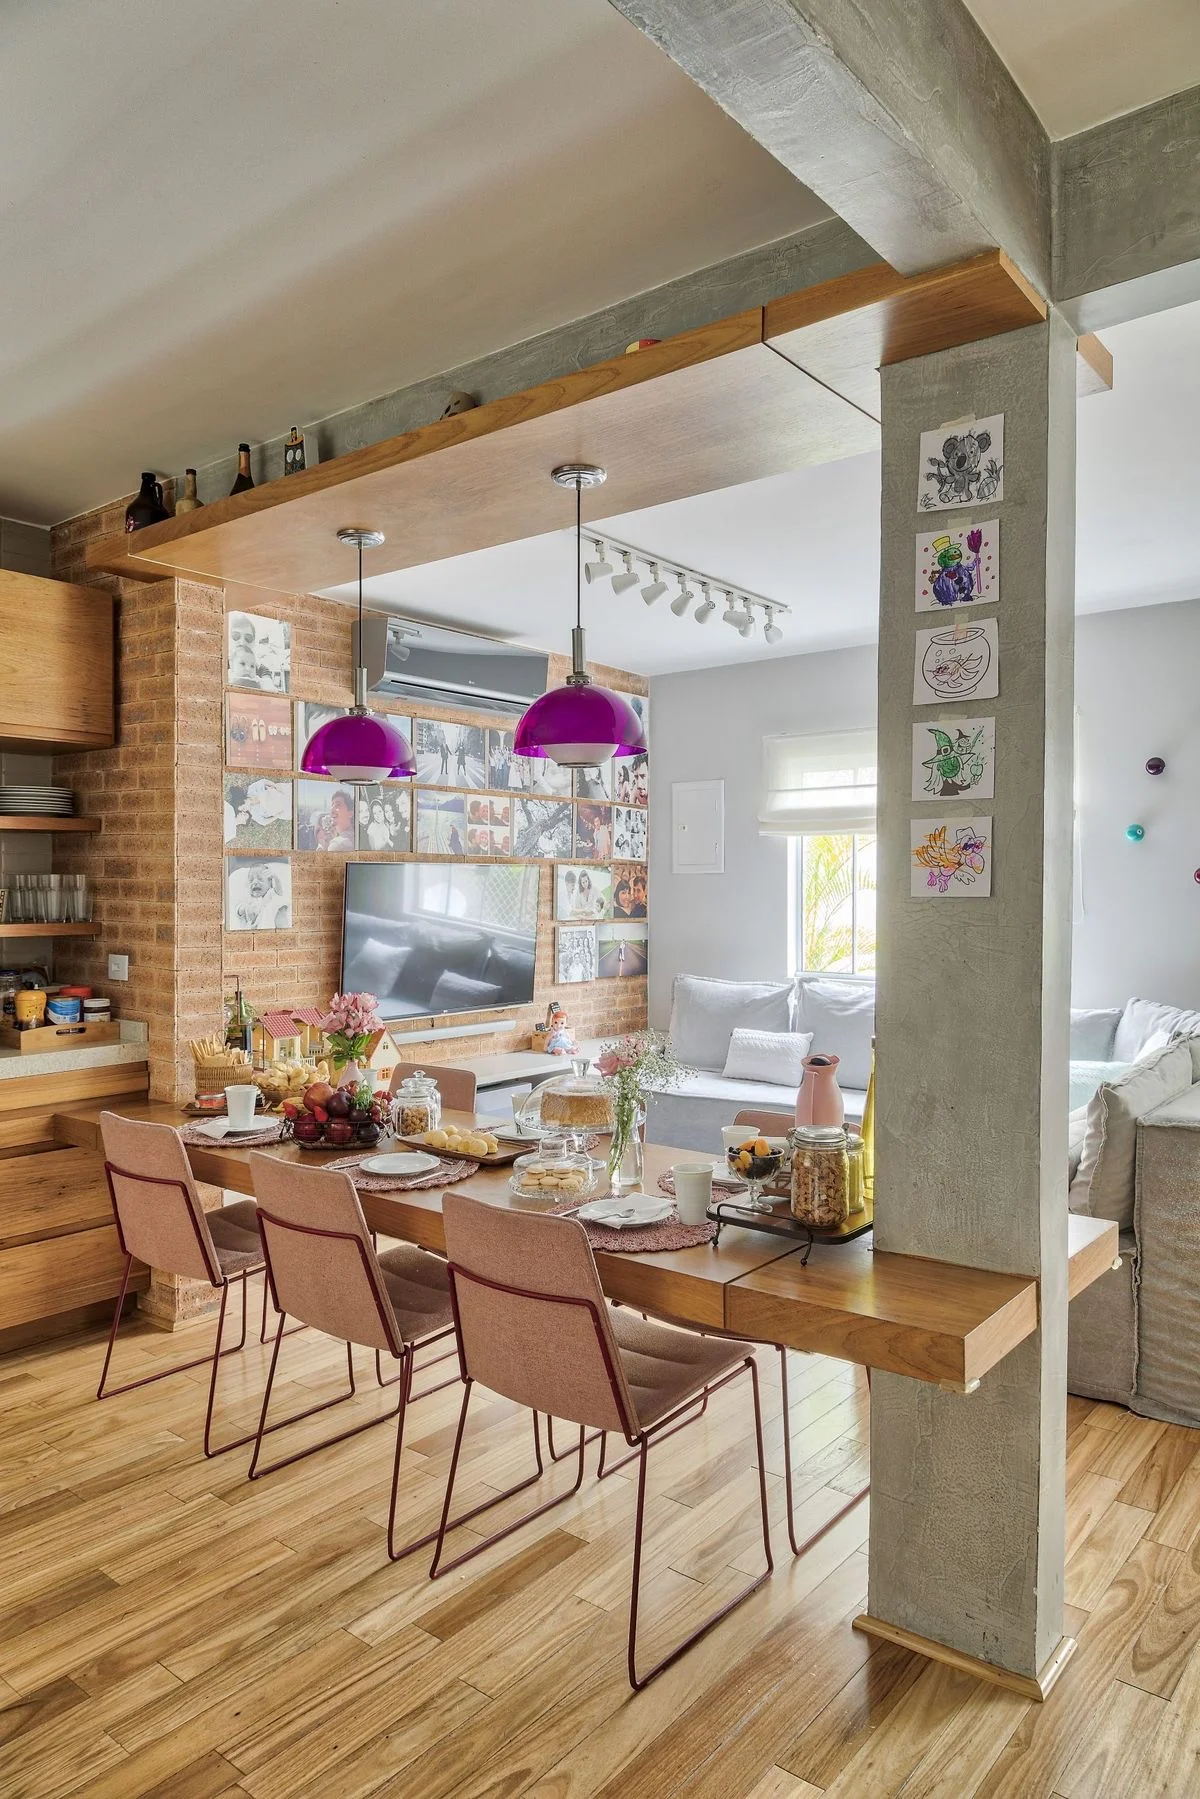 ستون طوسی آشپزخانه در ترکیب با میز غذاخوری چوبی با کاربرد اپن آشپزخانه